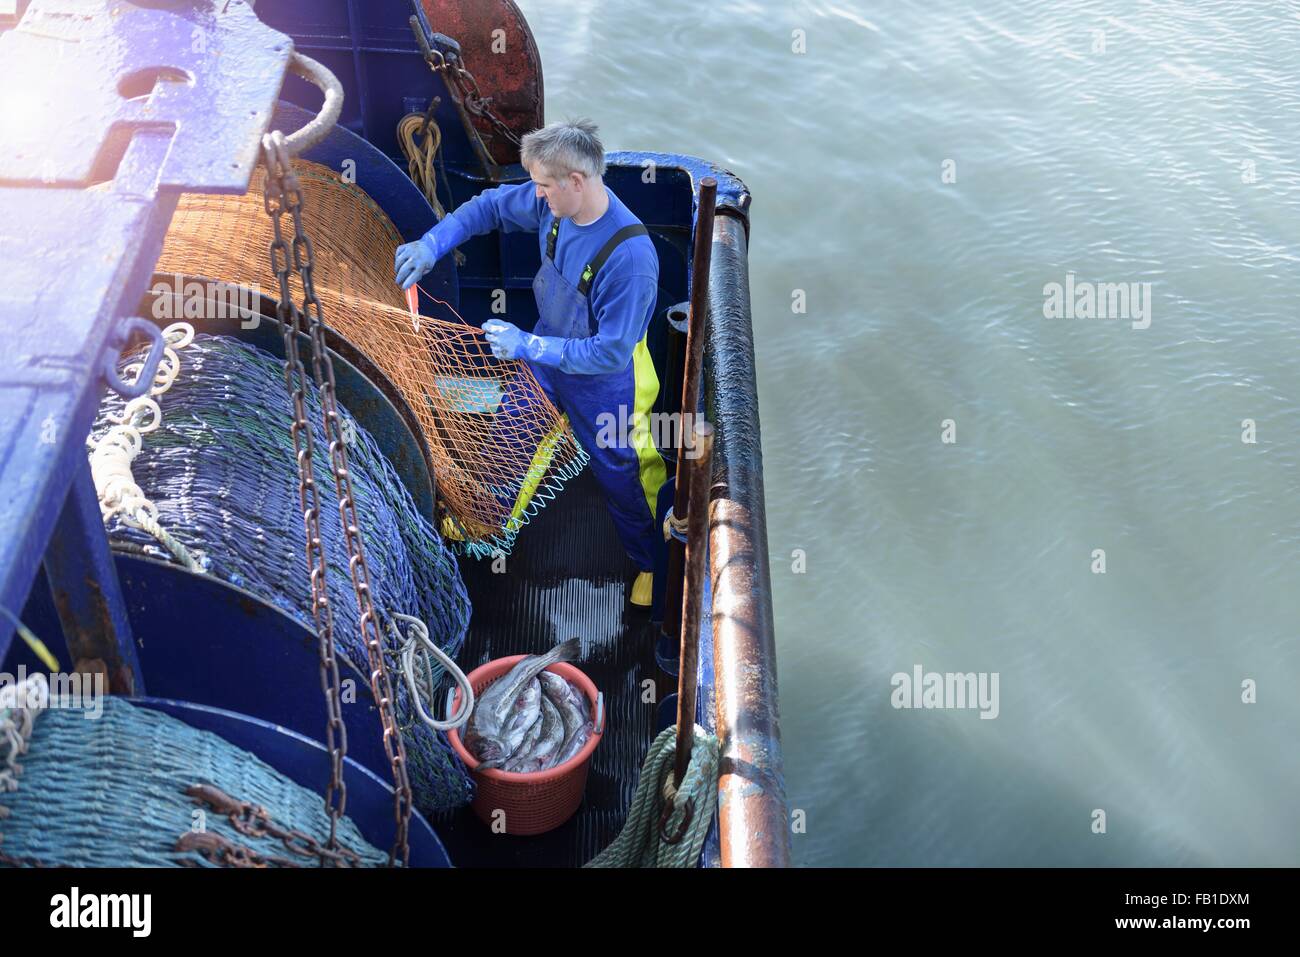 Préparer le filet de pêcheur chalutier, high angle view Banque D'Images